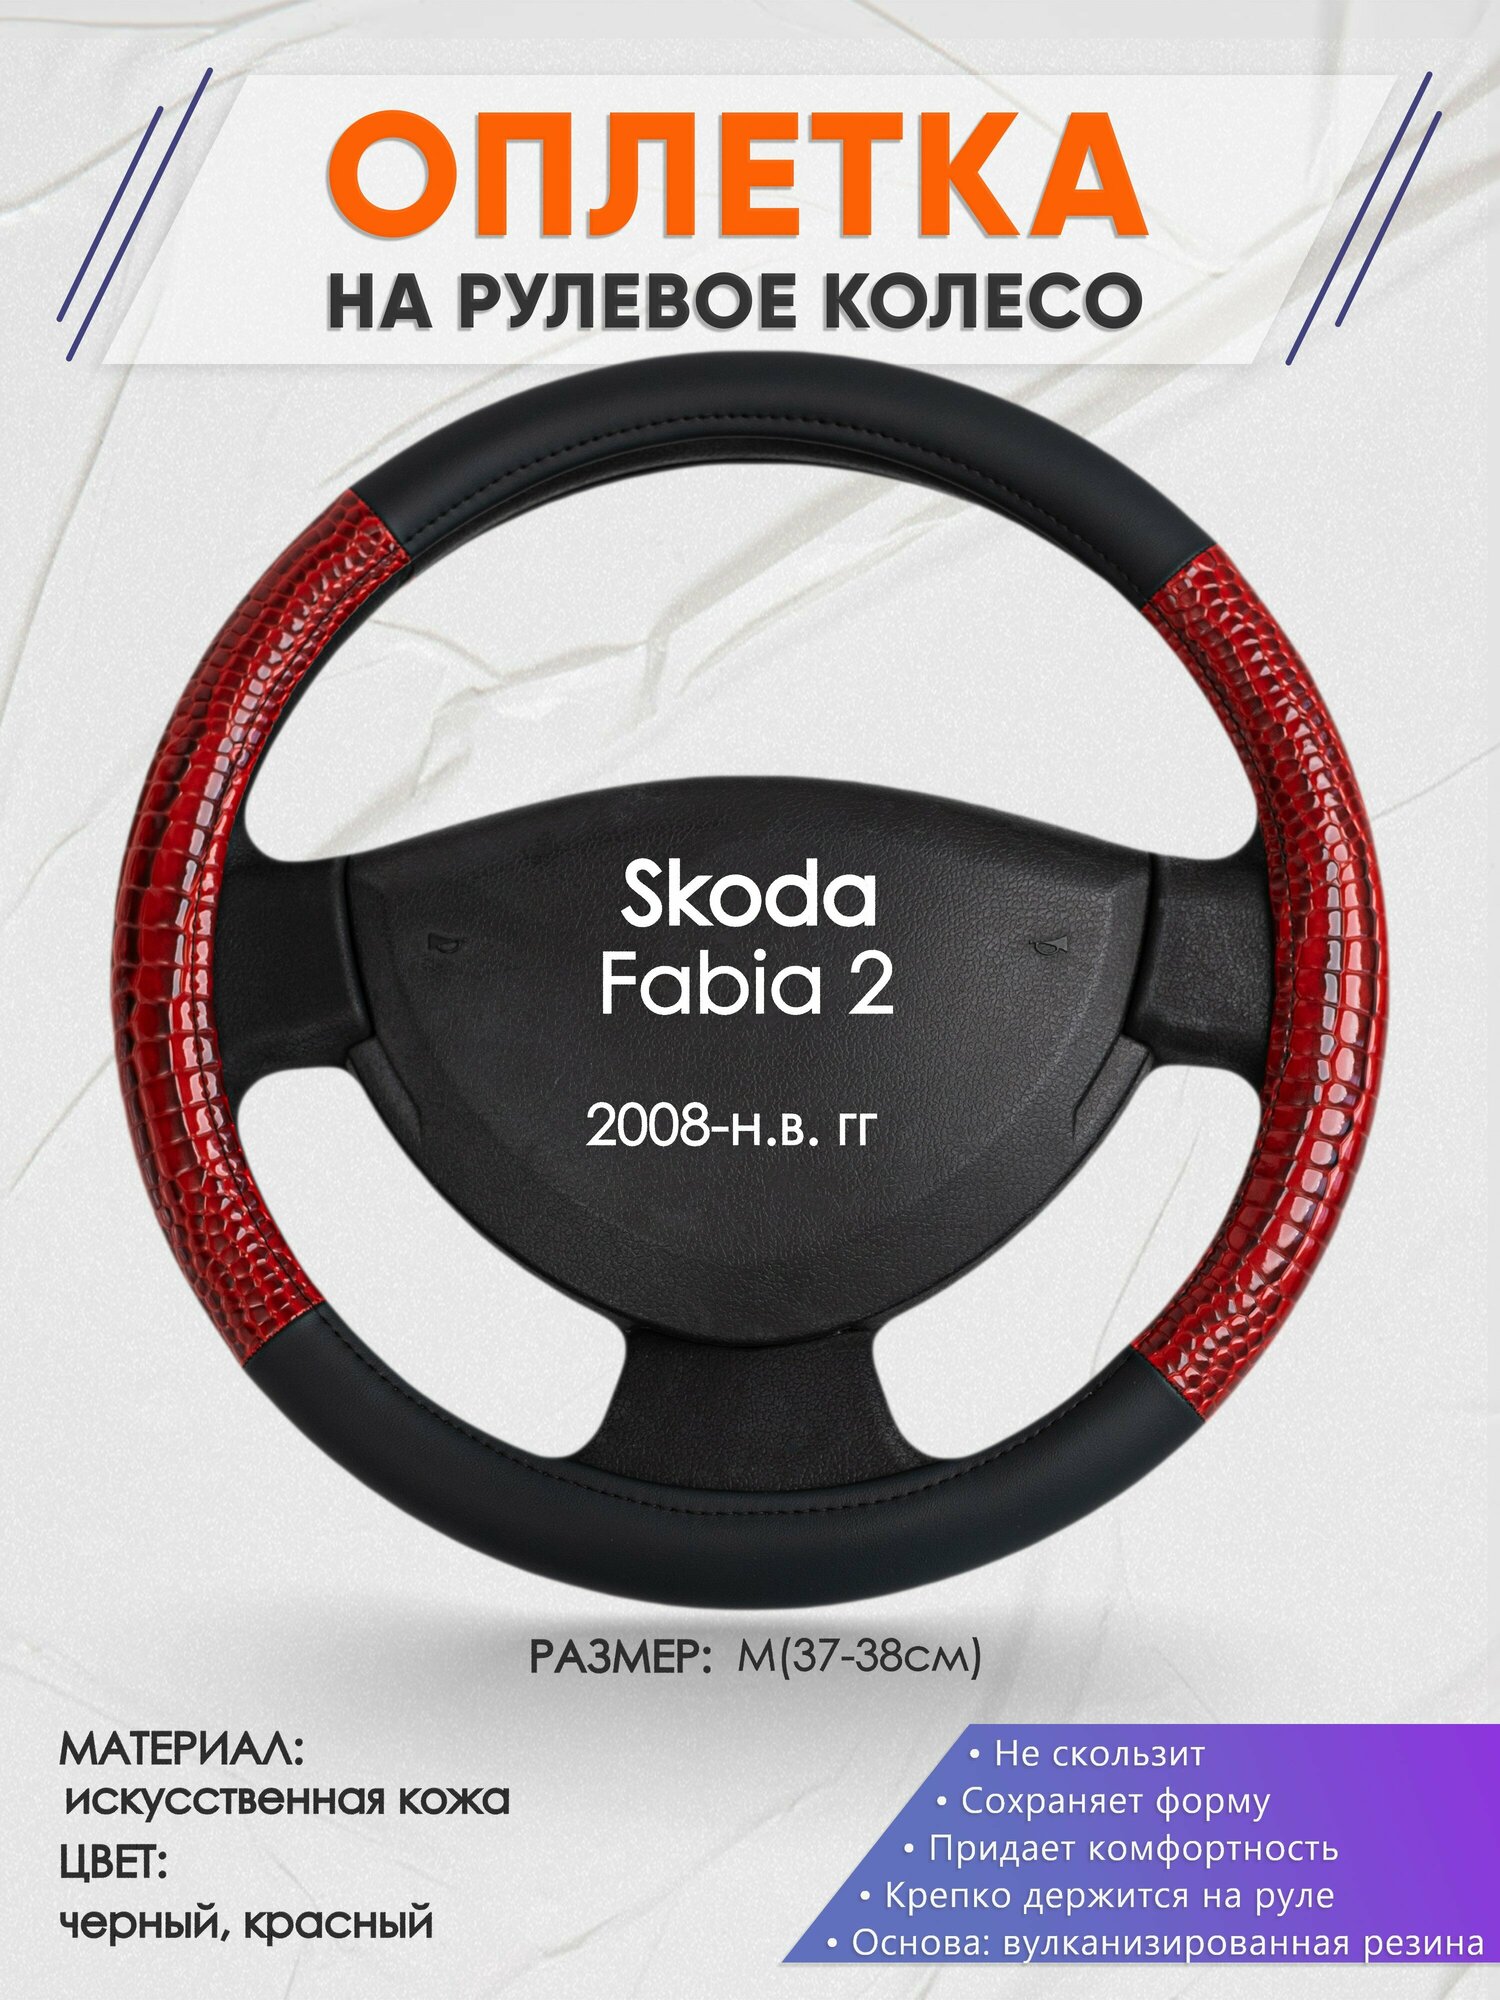 Оплетка на руль для Skoda Fabia 2(Шкода Фабия 2) 2008-н. в M(37-38см) Искусственная кожа 57